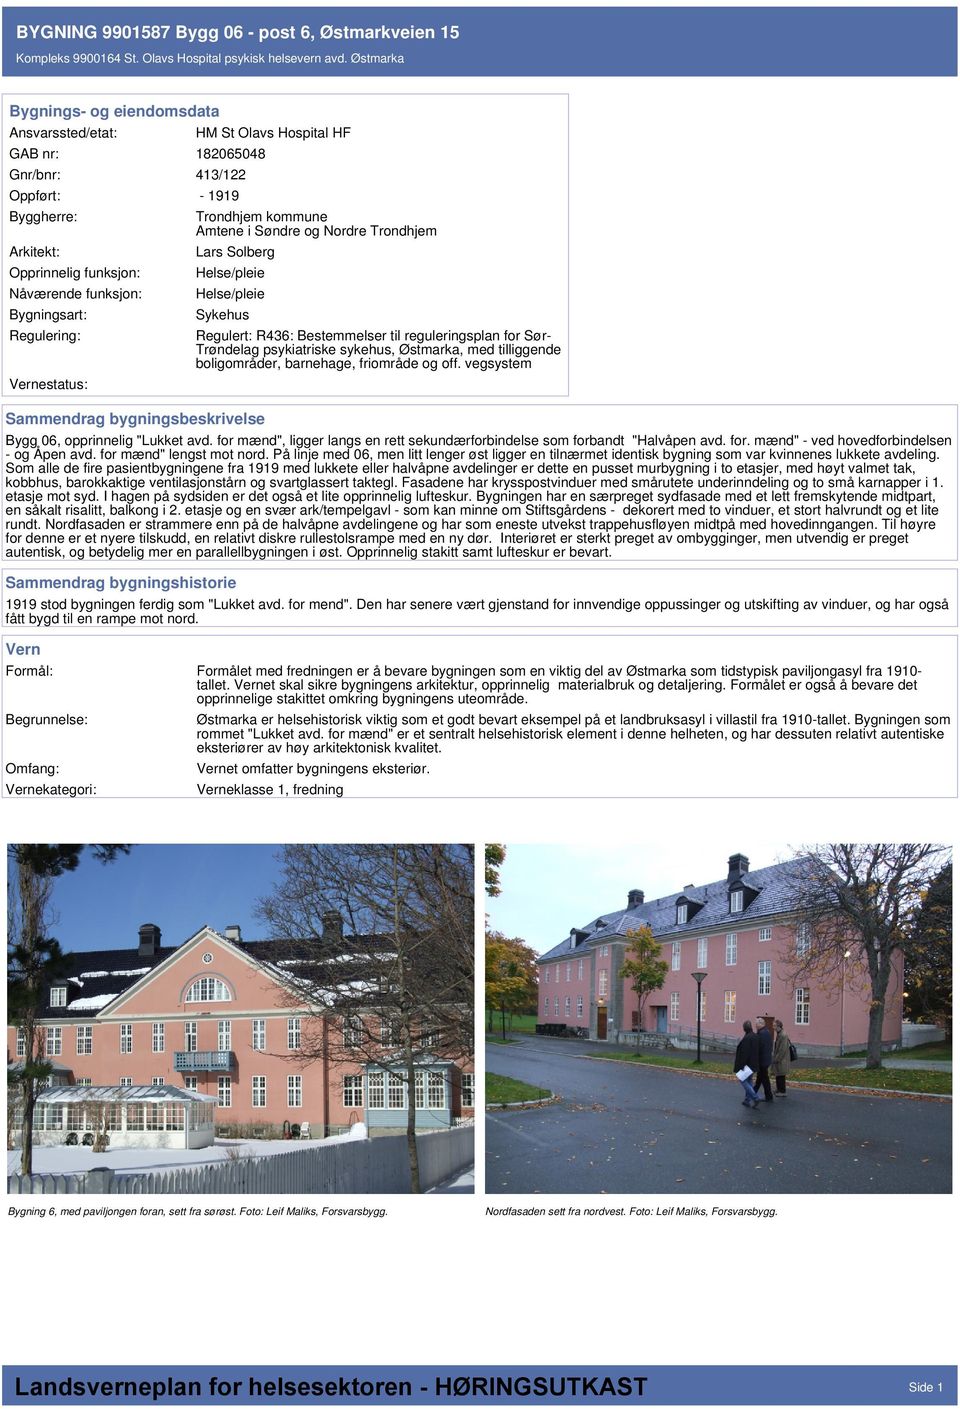 Bestemmelser til reguleringsplan for Sør- Trøndelag psykiatriske sykehus, Østmarka, med tilliggende boligområder, barnehage, friområde og off. vegsystem Bygg 06, opprinnelig "Lukket avd.